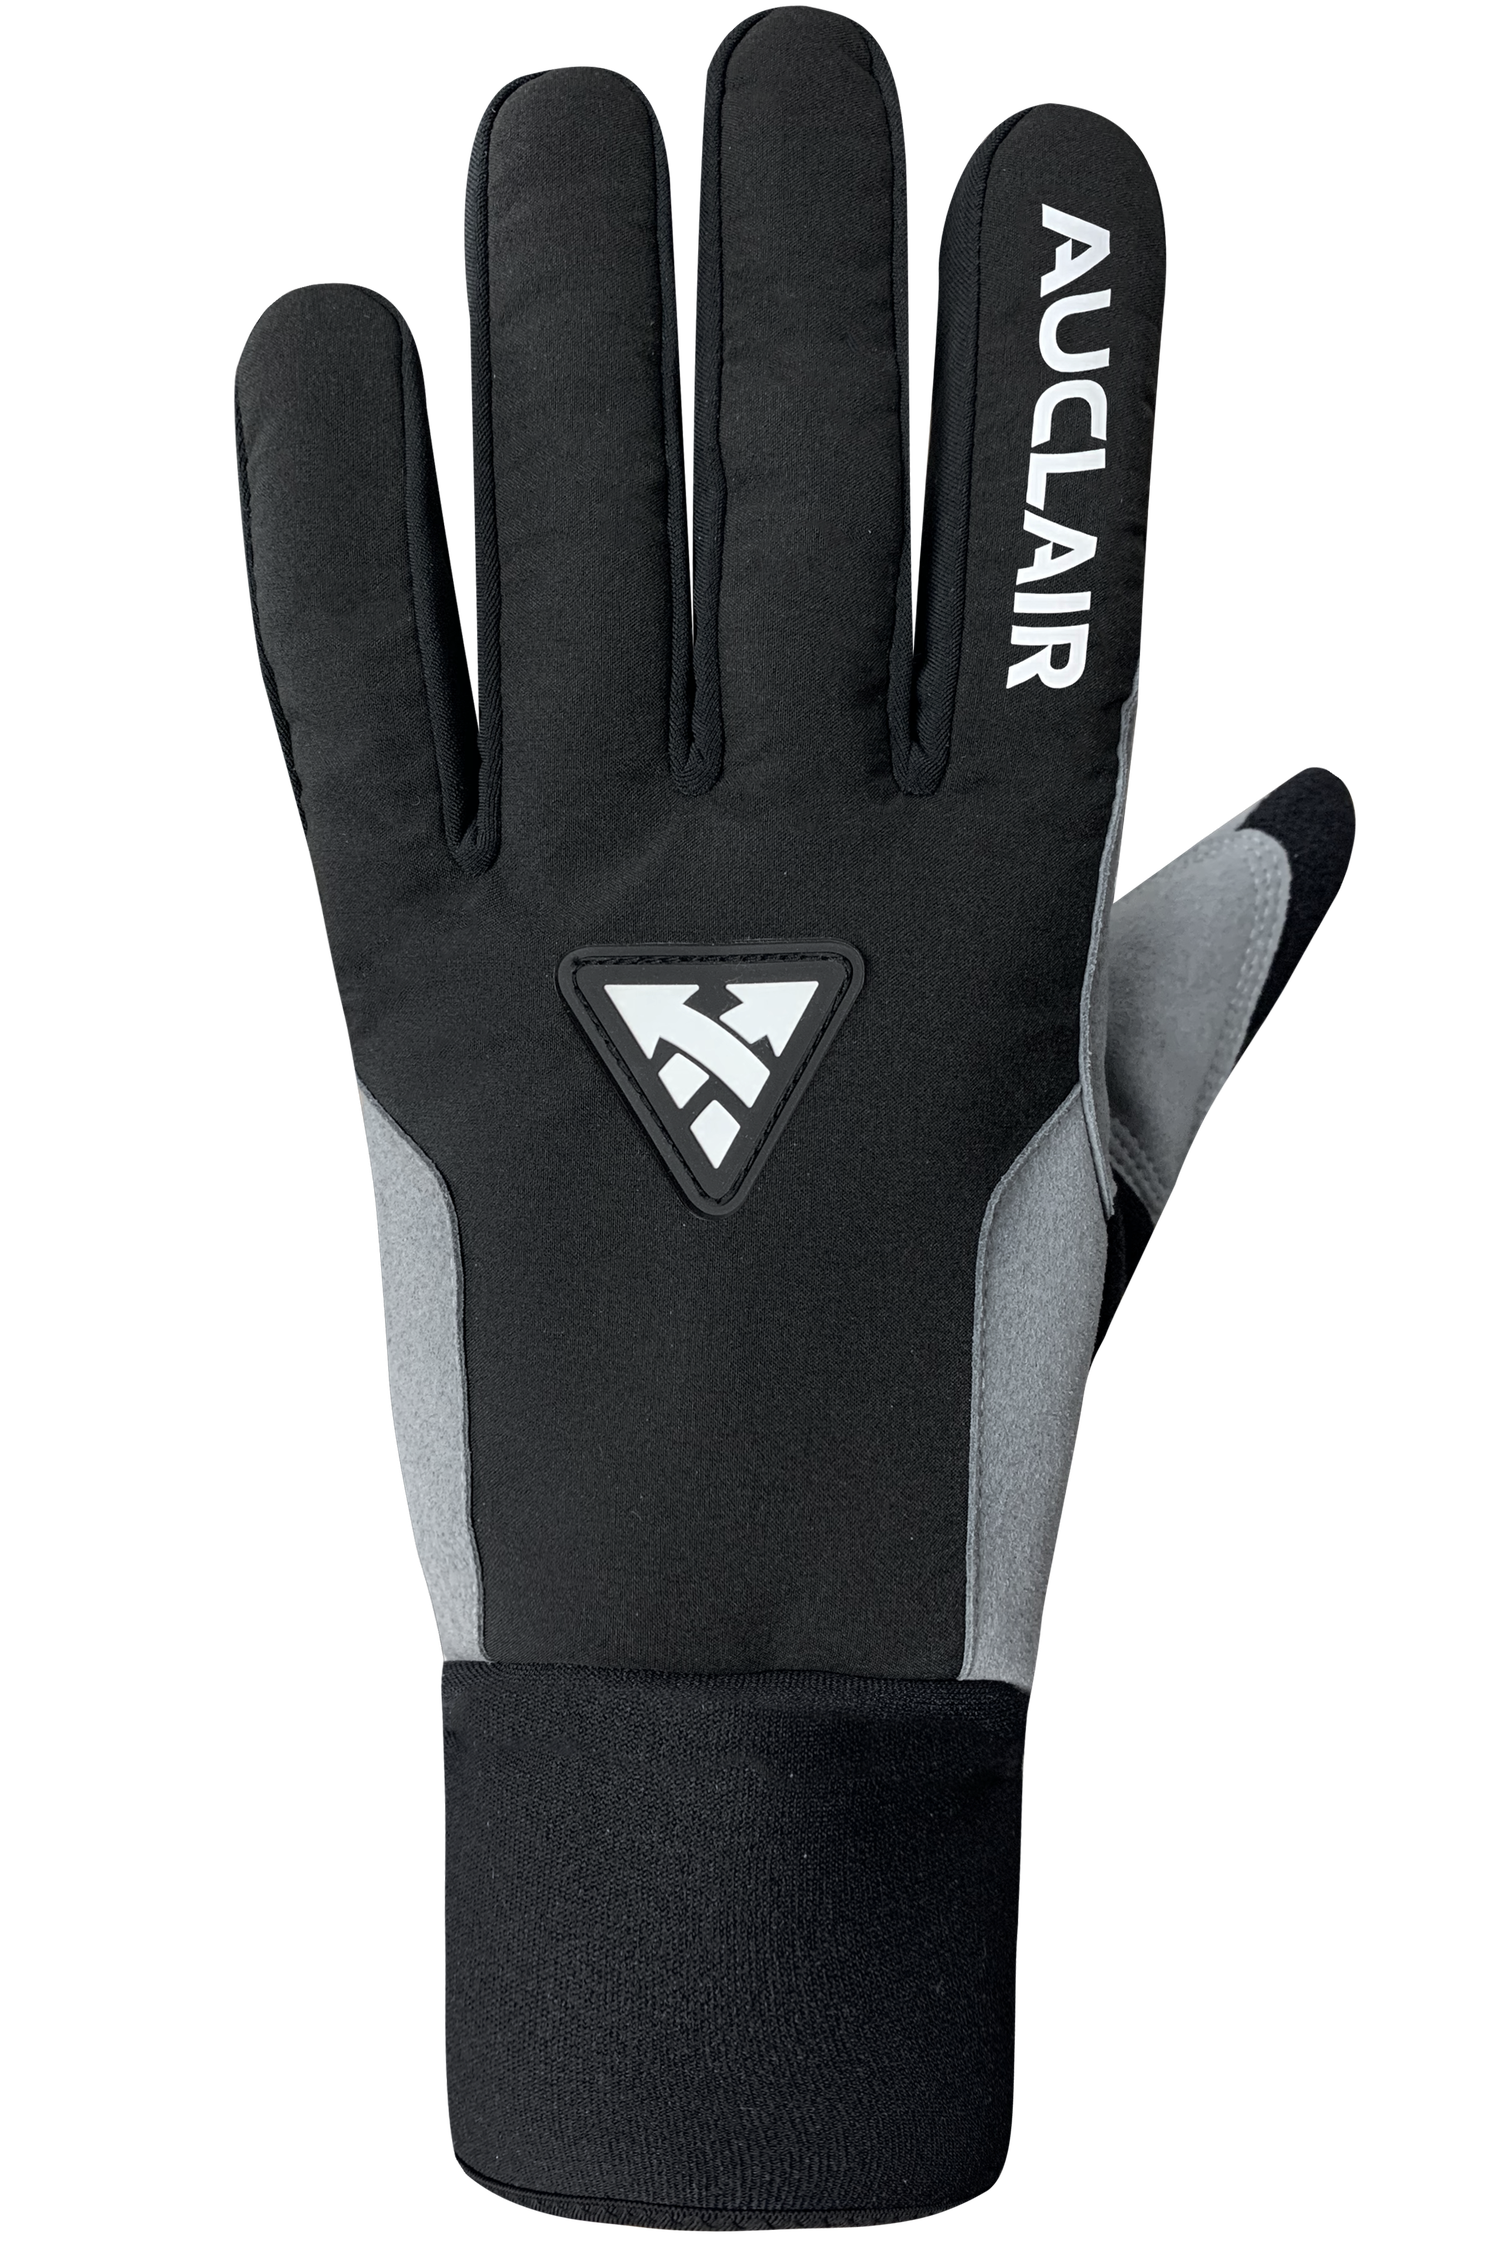 Stellar 2.0 Gloves - Men-Glove-Auclair Sports-S-Black/Grey-Auclair Sports